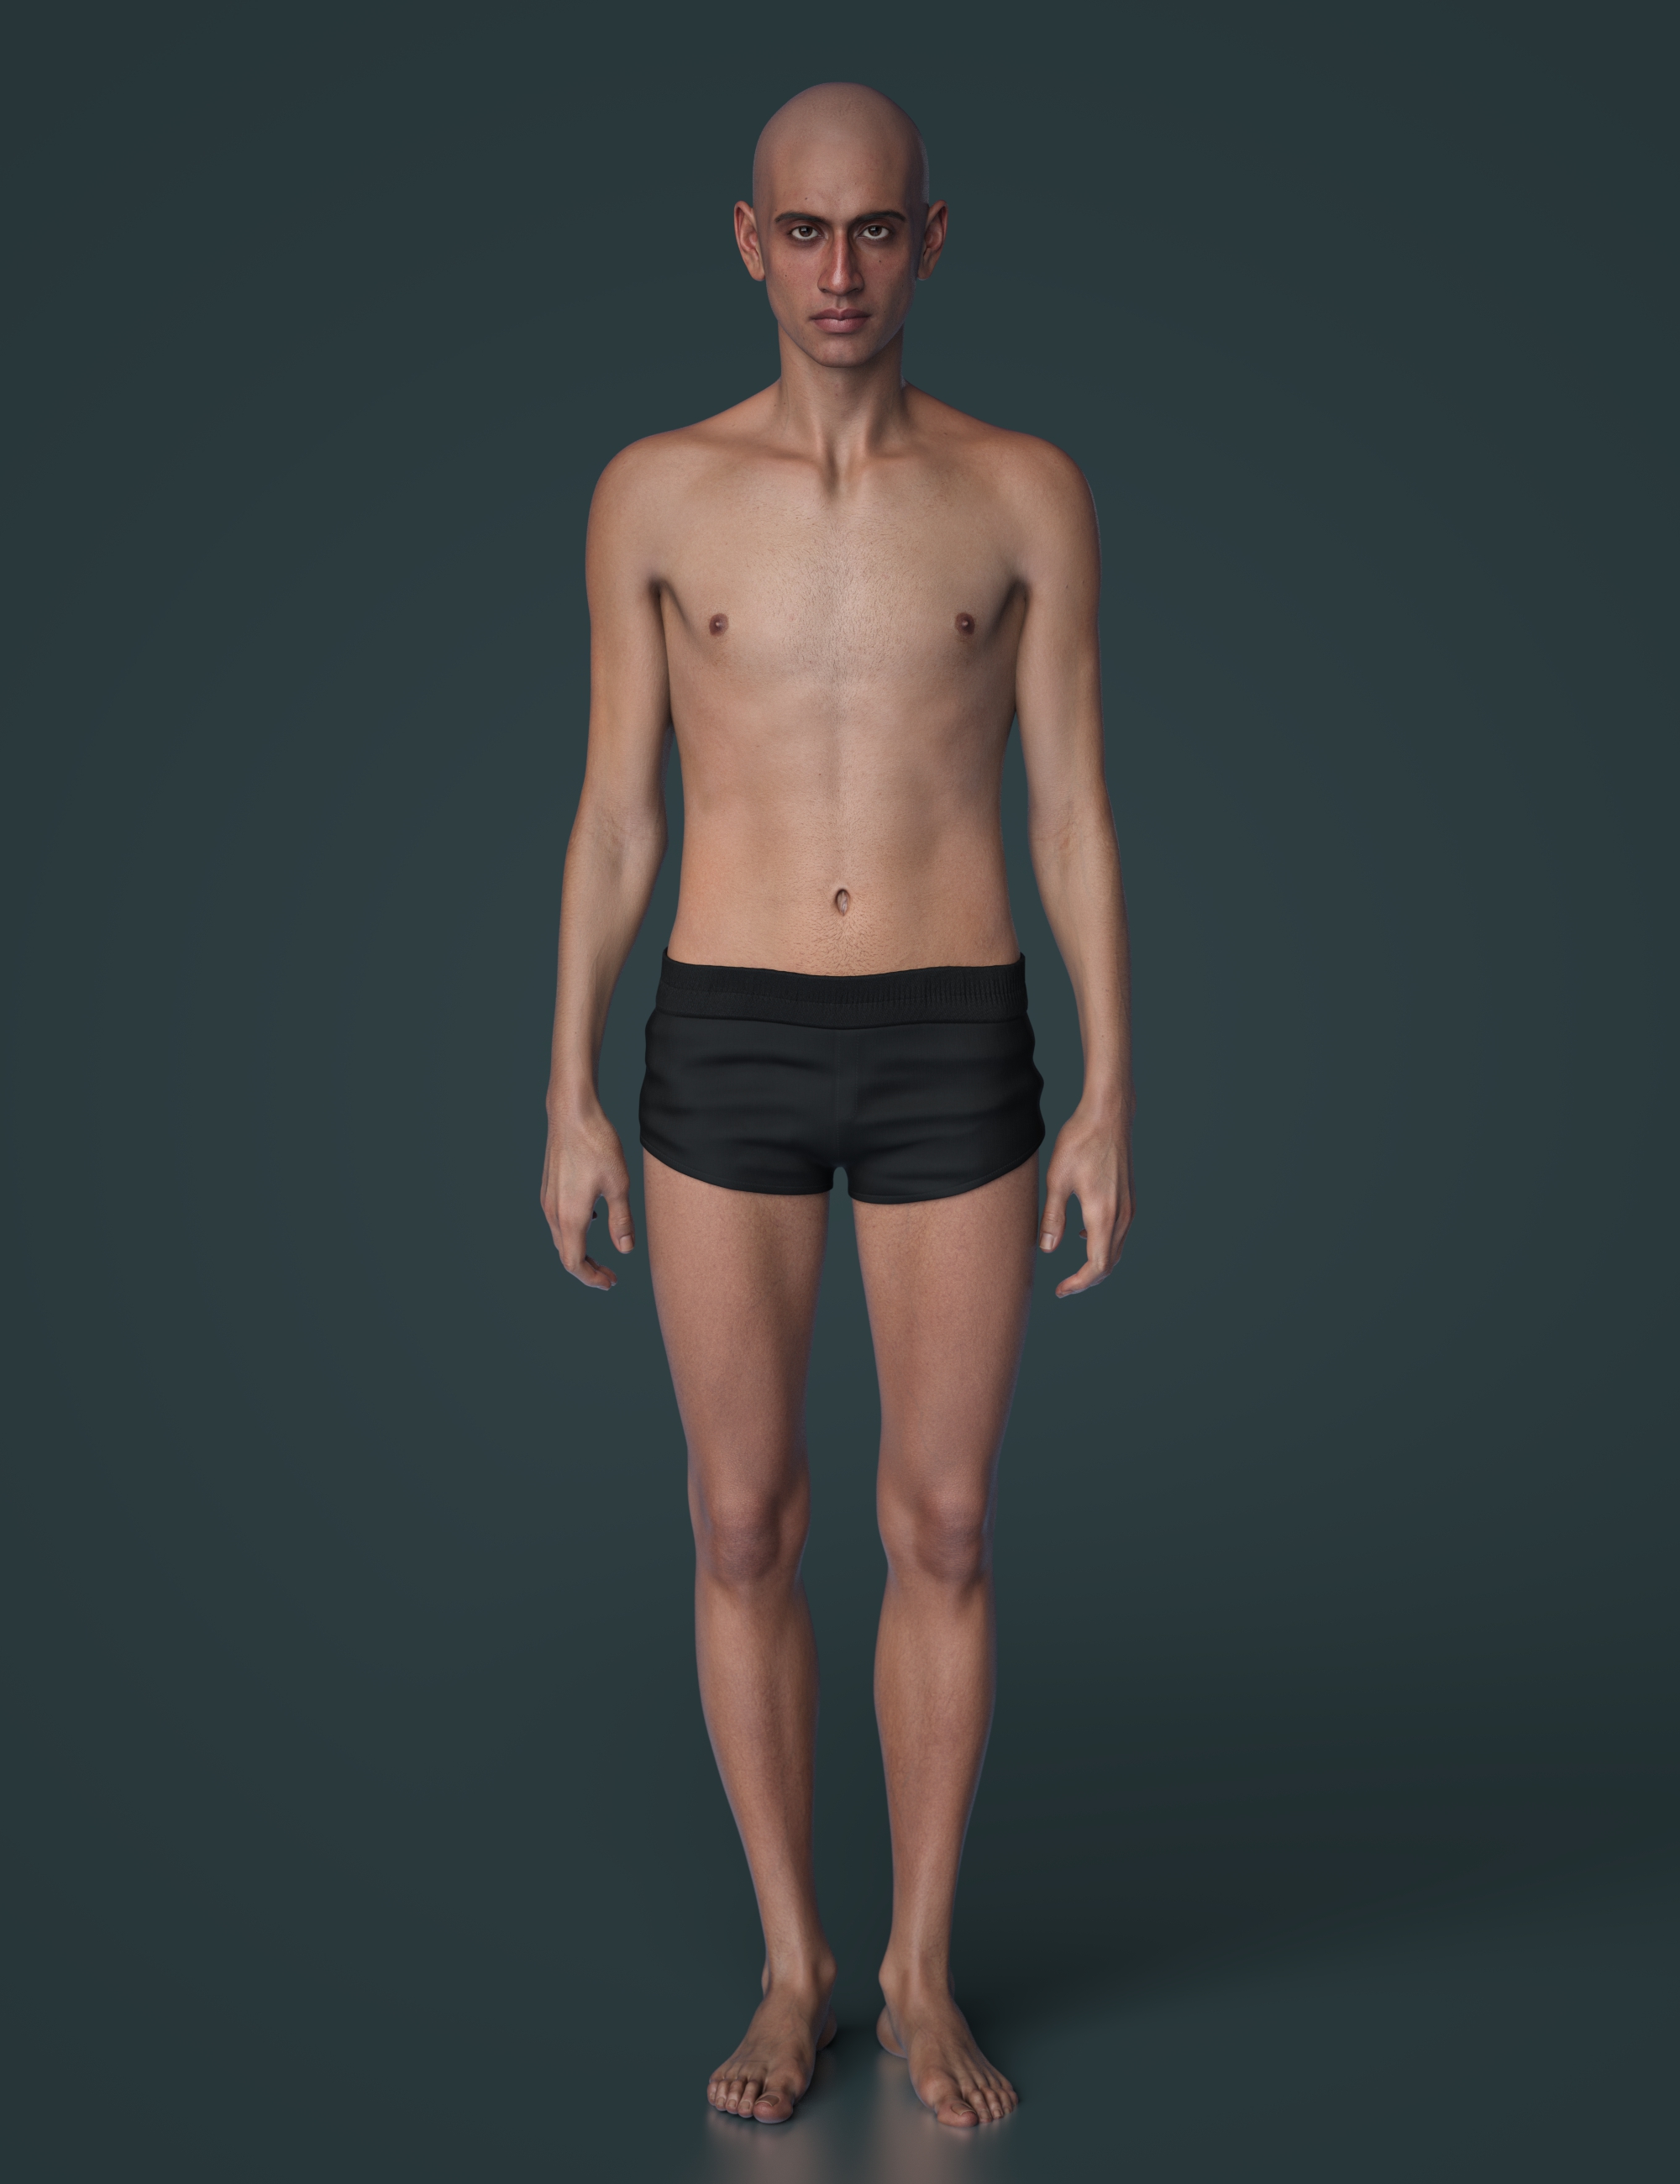 John 9 Skinny Shape Add-On by: , 3D Models by Daz 3D